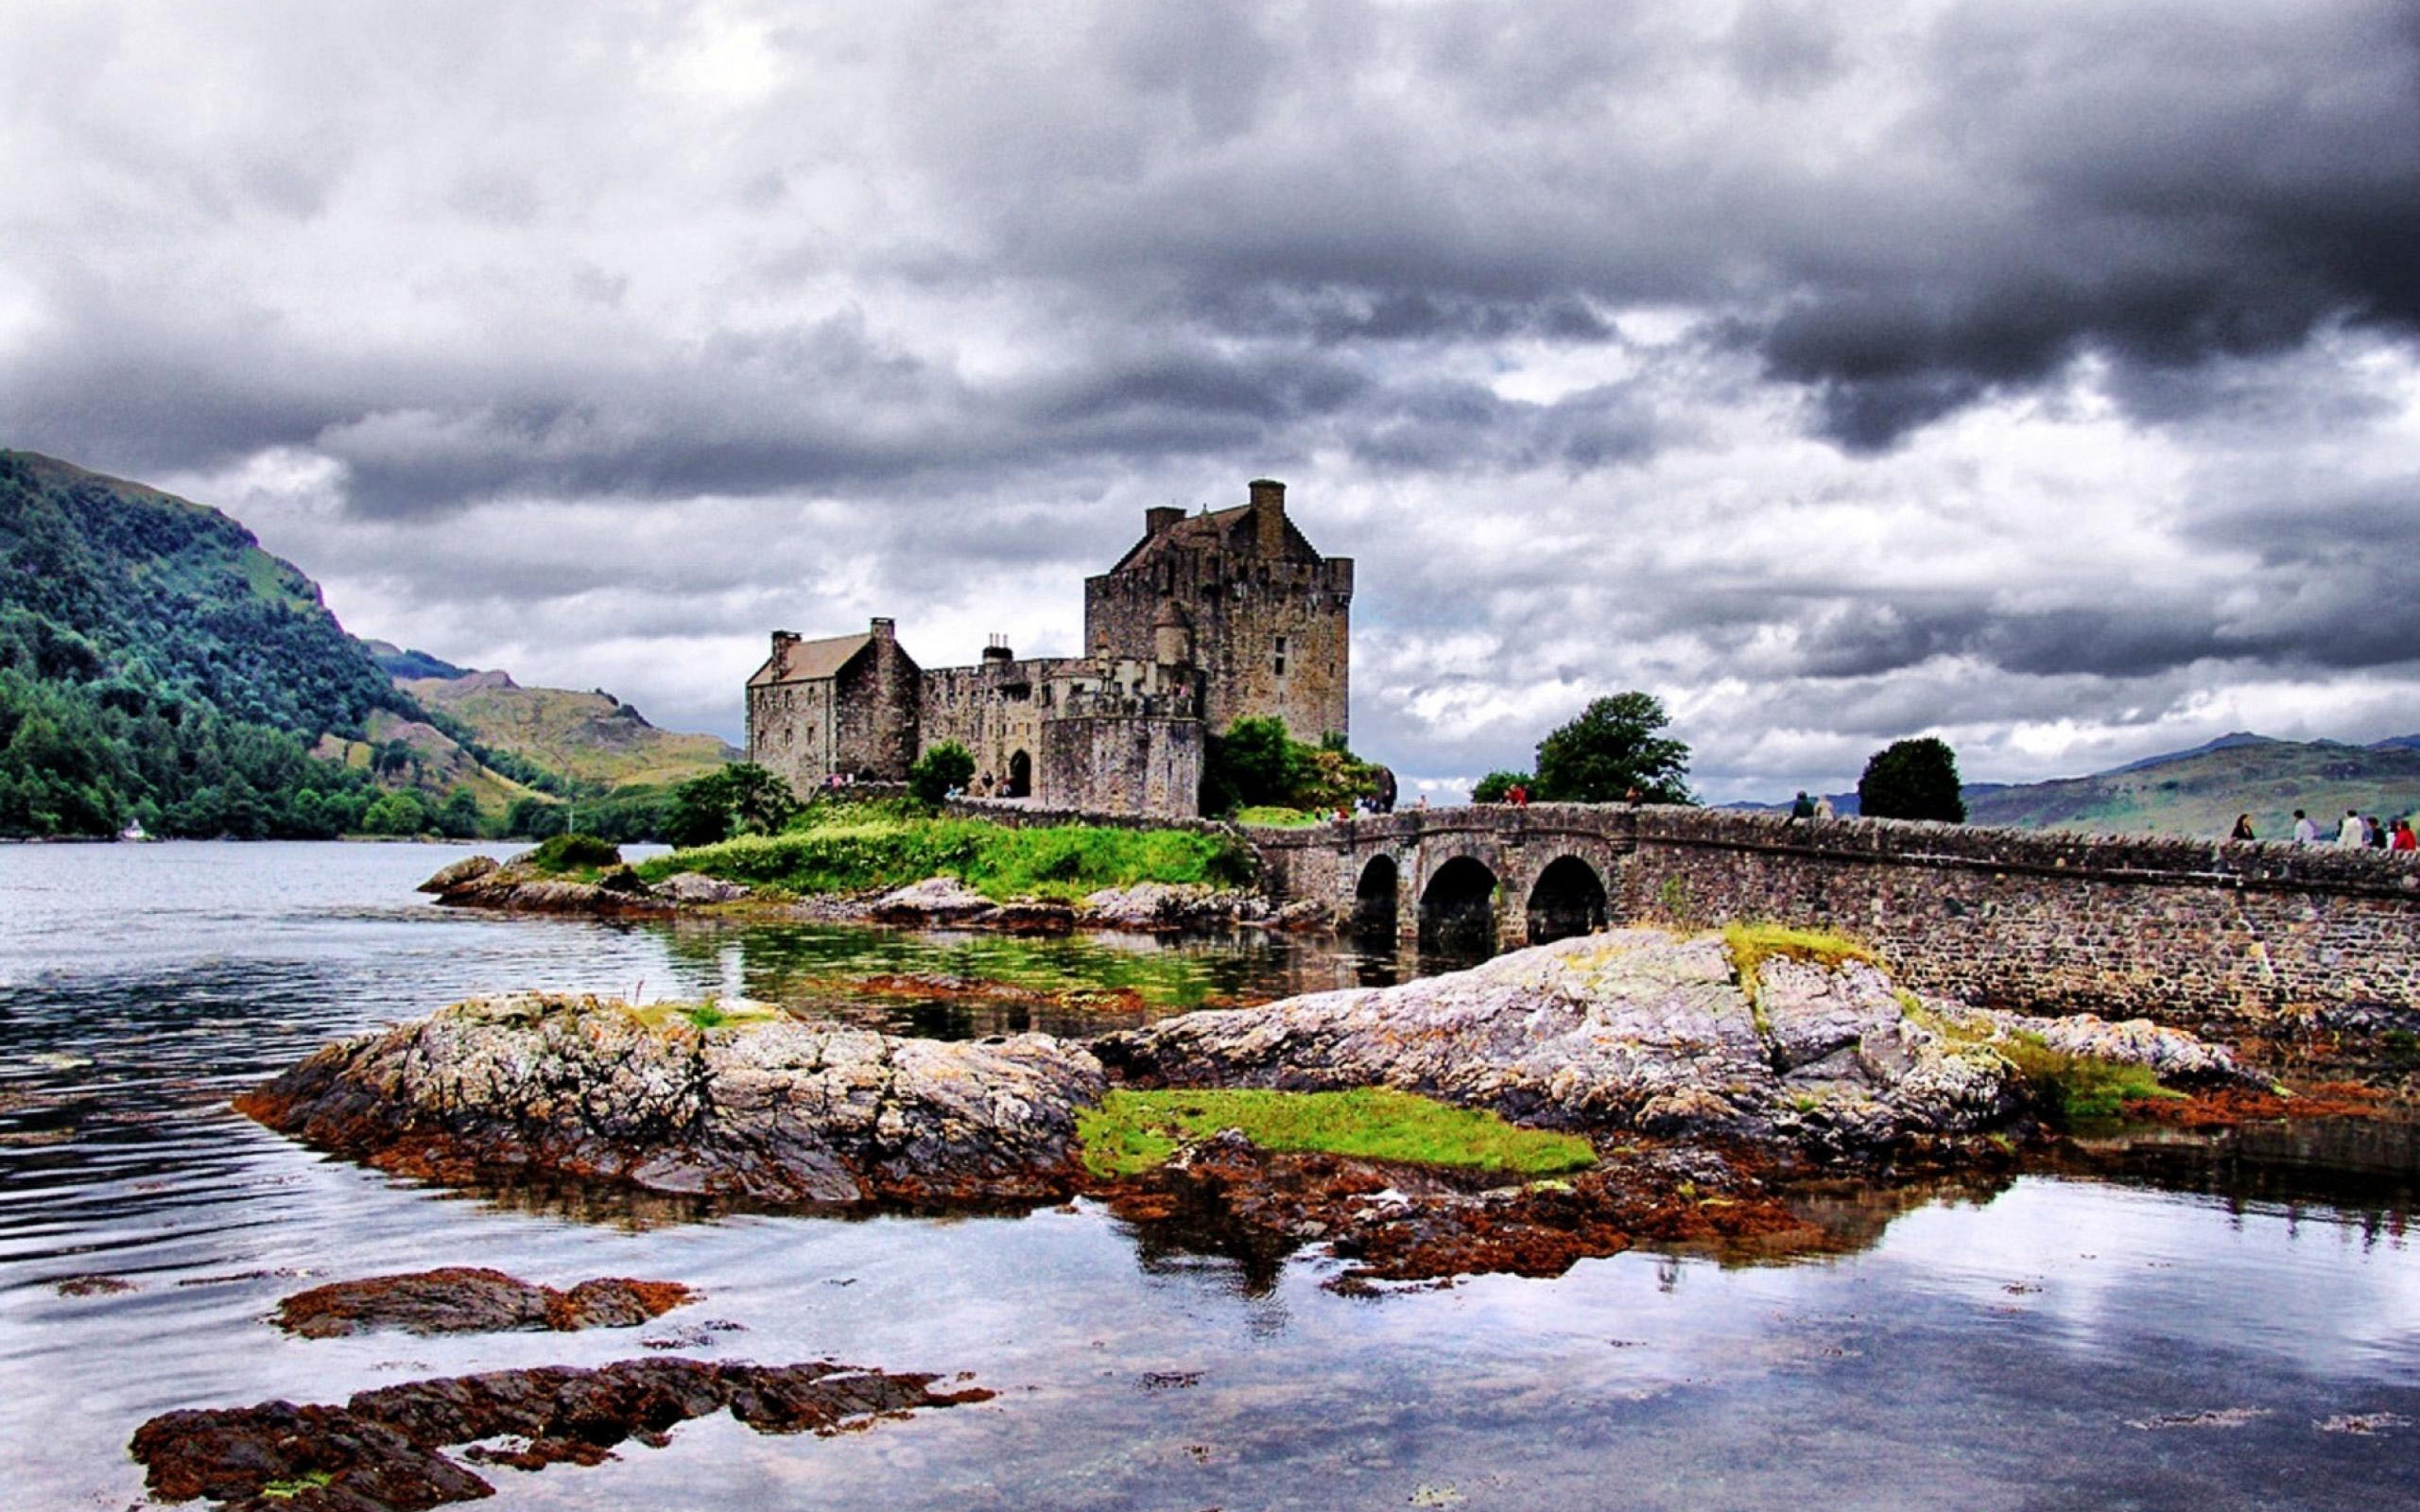  The Eilean Donan Castle in Scotland is like a fairy tale location